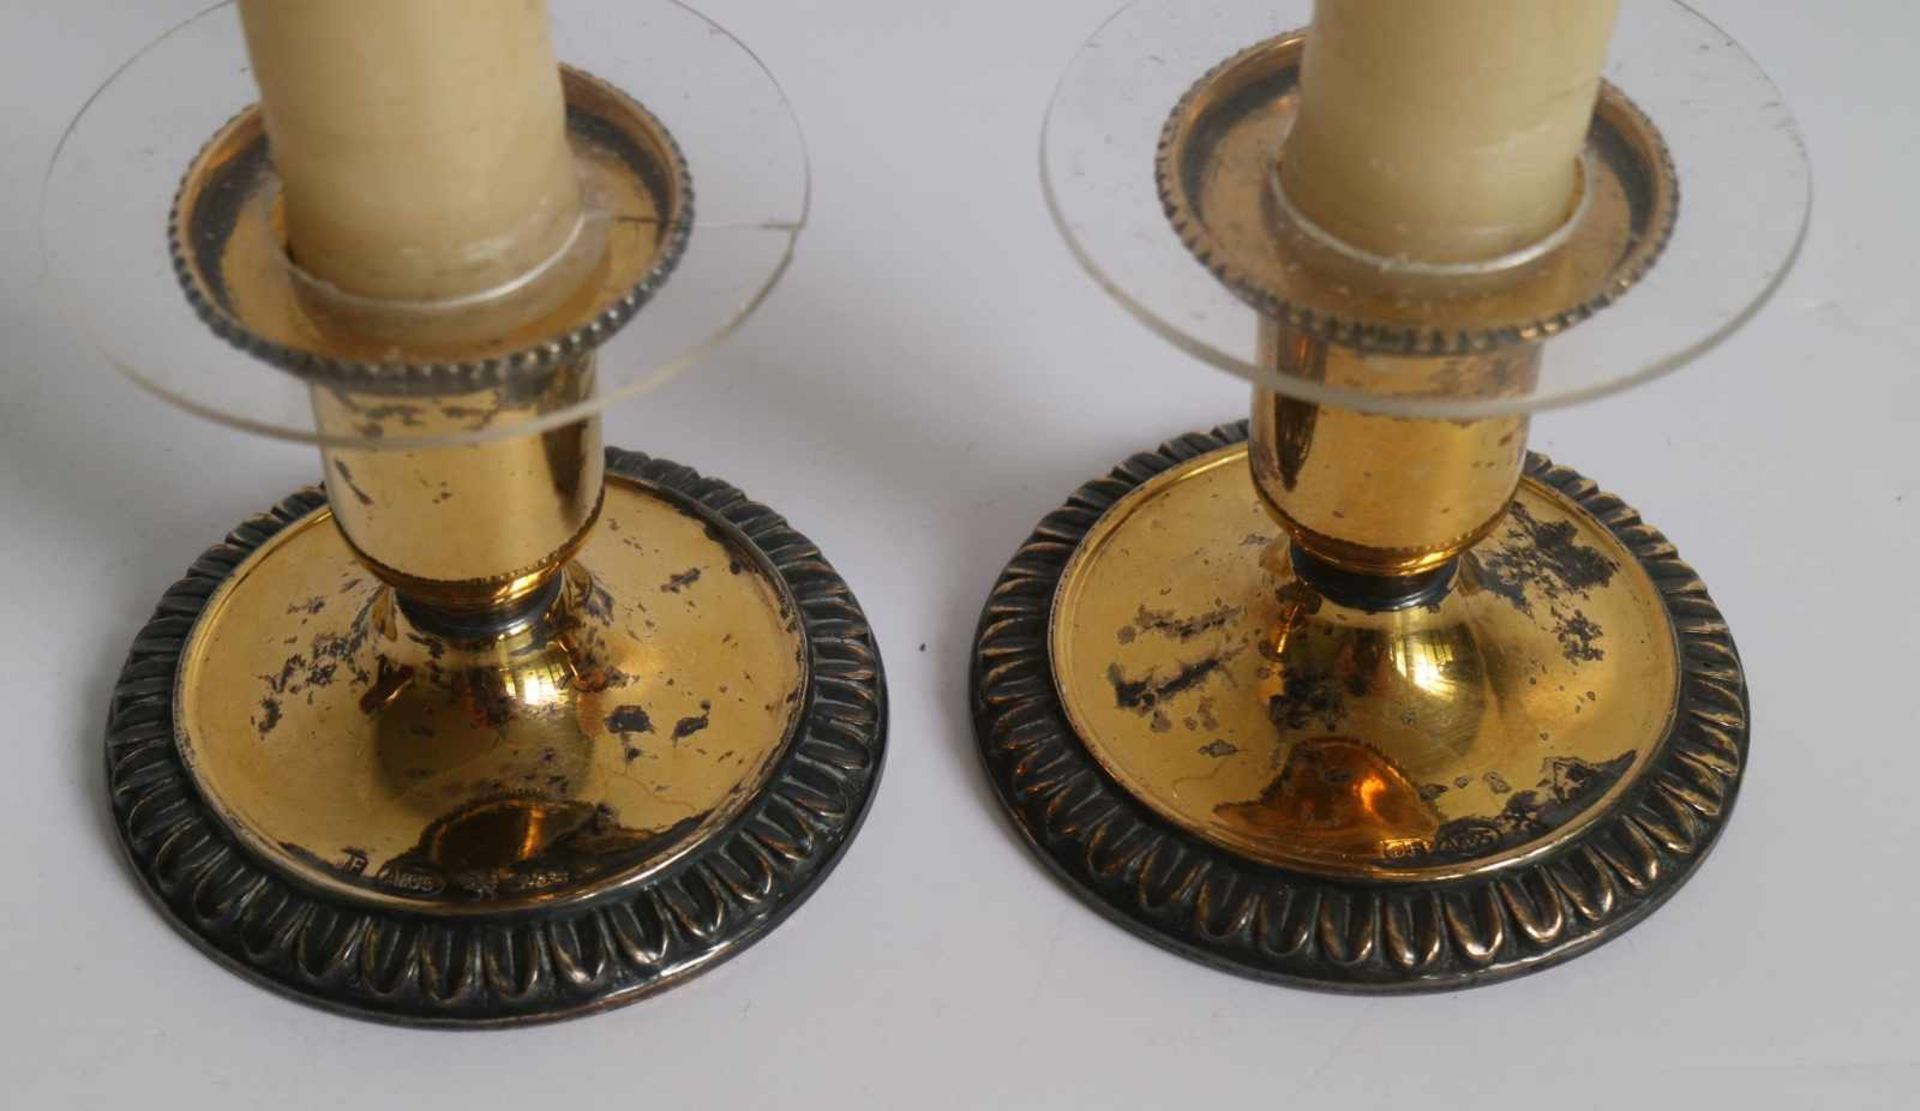 Solid silver & gold plated candlesticks Circa 1950 H 5 cm (zonder kaarsen) - Bild 2 aus 4